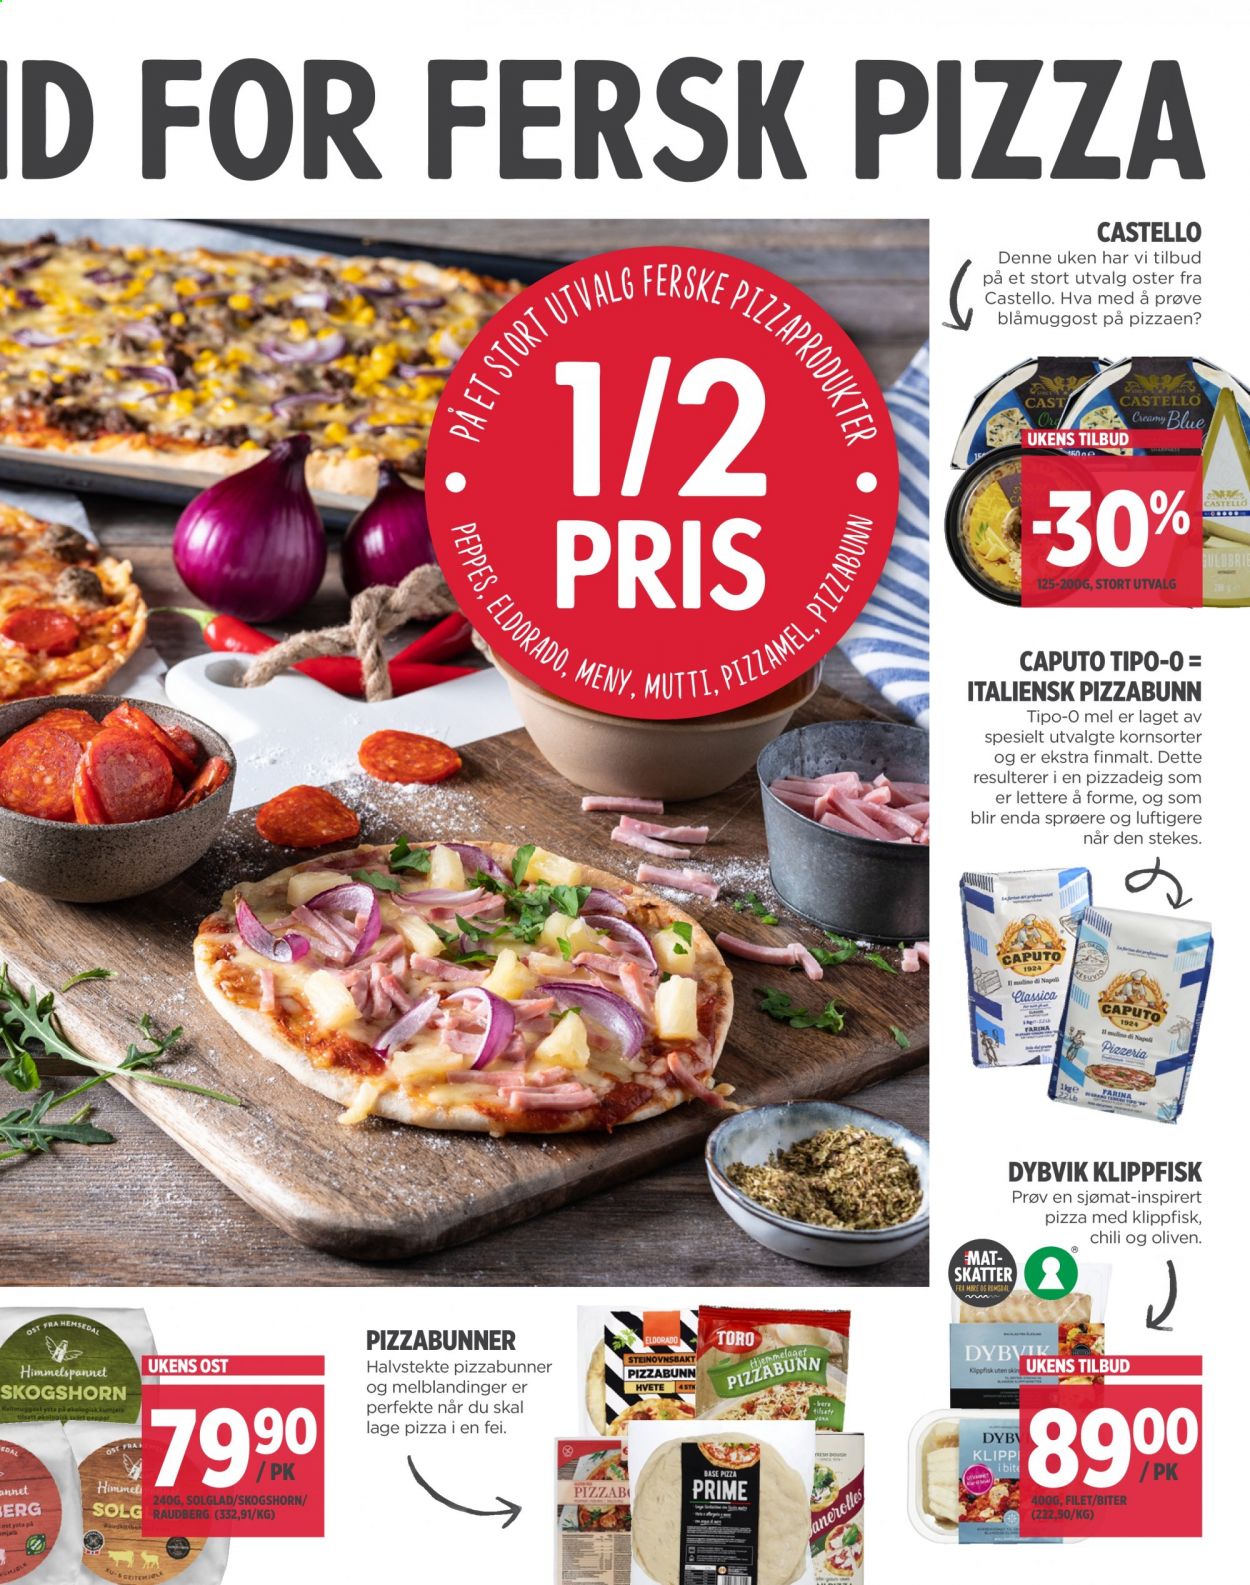 thumbnail - Kundeavis MENY - 25.2.2021 - 27.2.2021 - Produkter fra tilbudsaviser - pizza, pizzabunn, oliven, blåmuggost, ost, mel. Side 3.